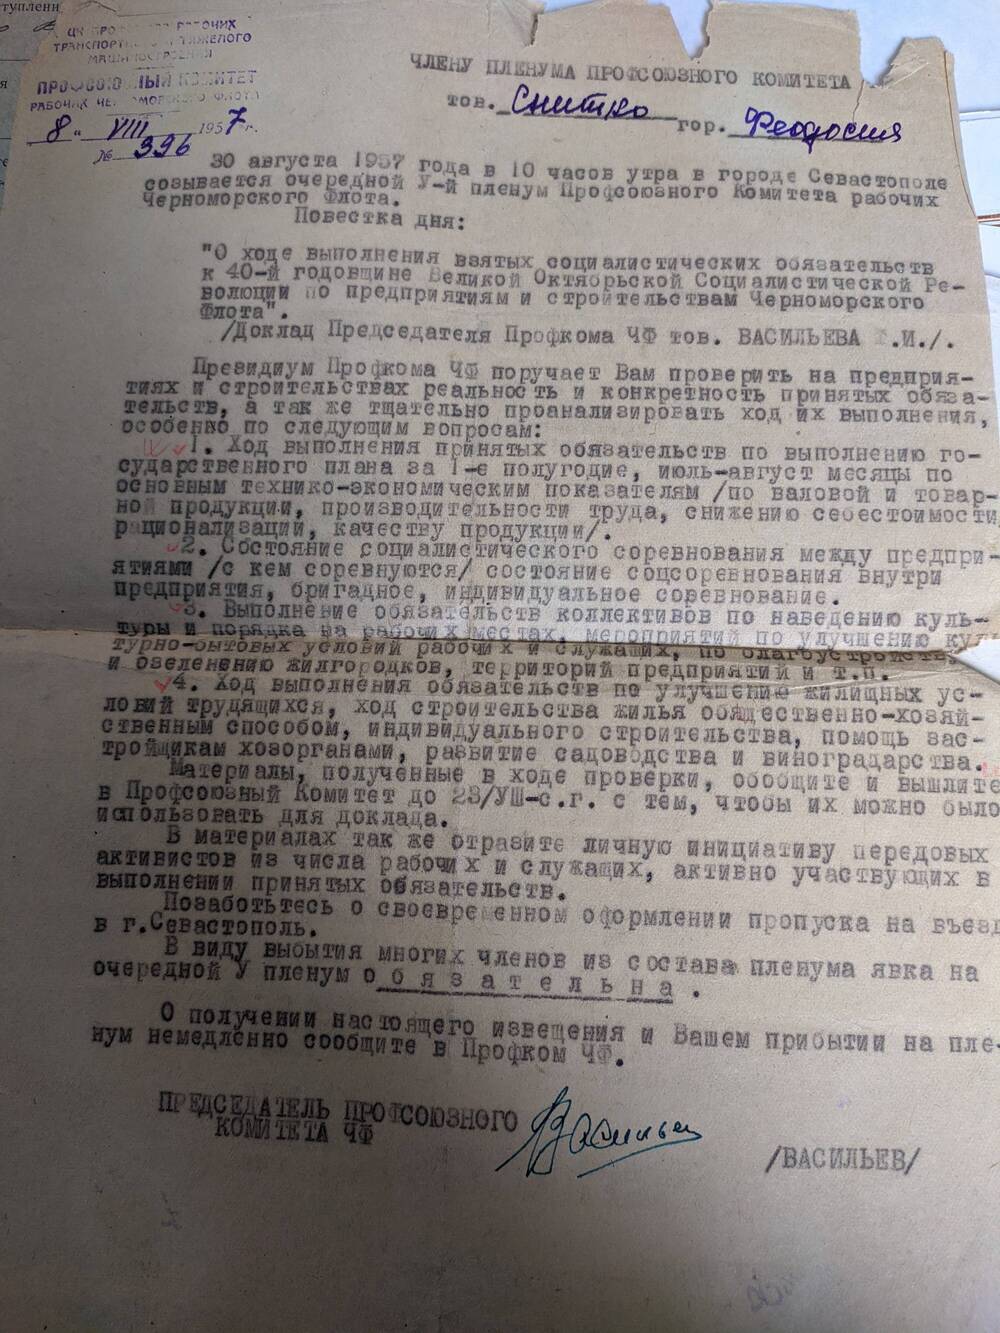 Письмо-извещение №396 профсоюзного комитета рабочих Черноморского флота от 8.08.1957 г. Снитко В.Л.